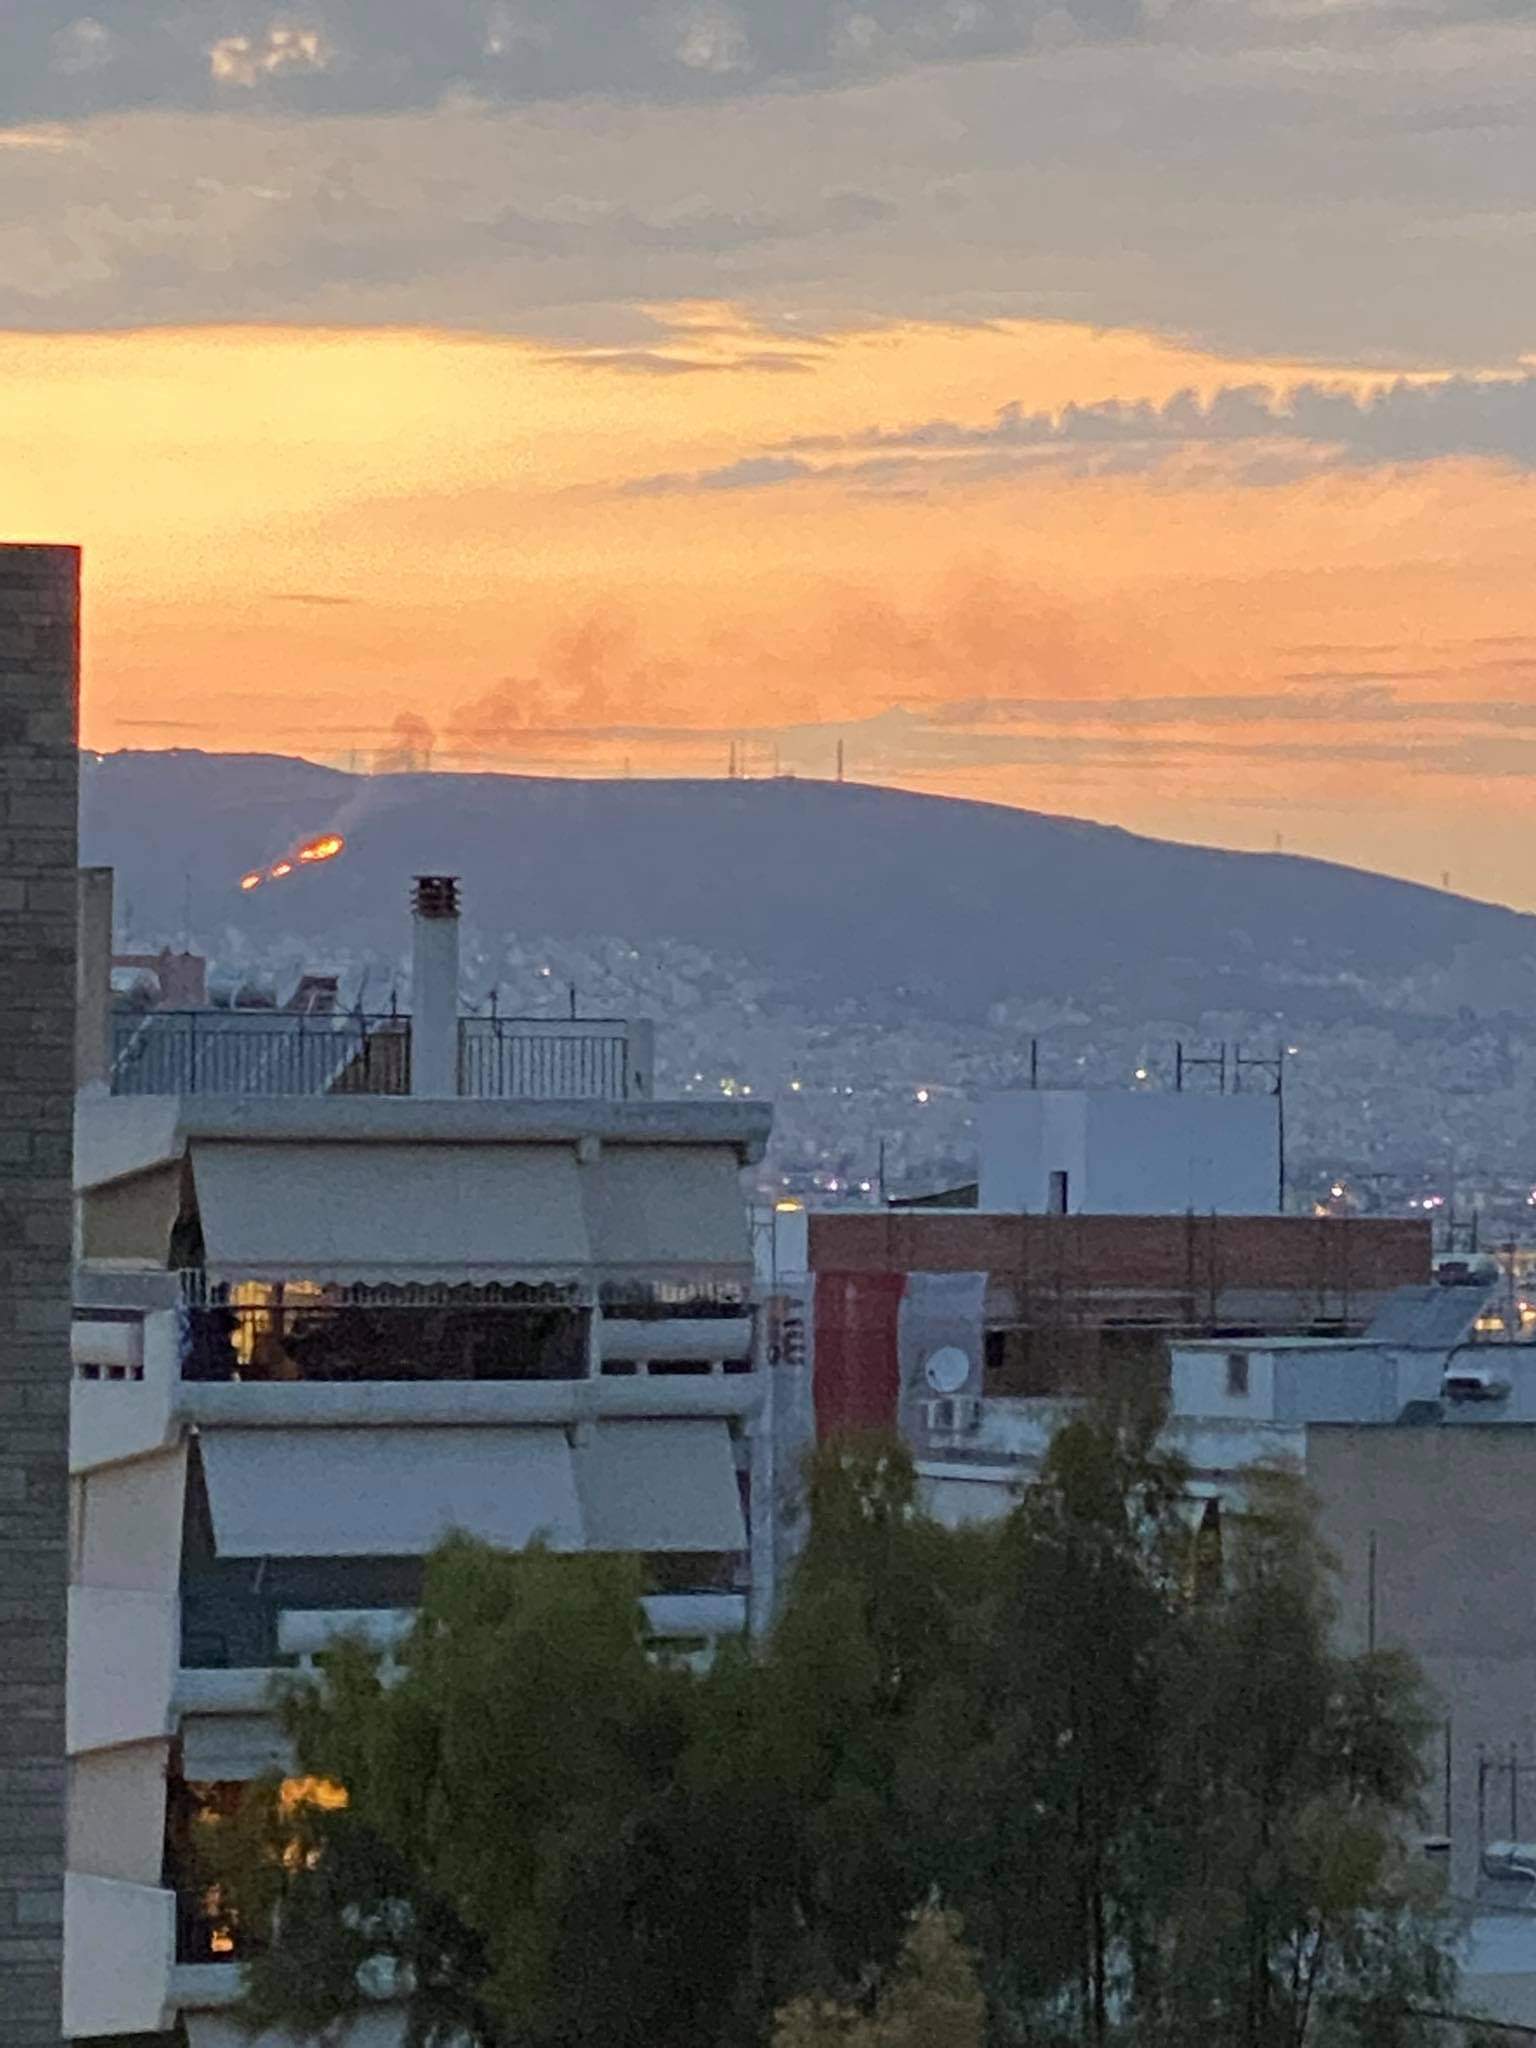 Πυρκαγιά ΤΩΡΑ σε χαμηλή βλάστηση στην Νίκαια Αττικής